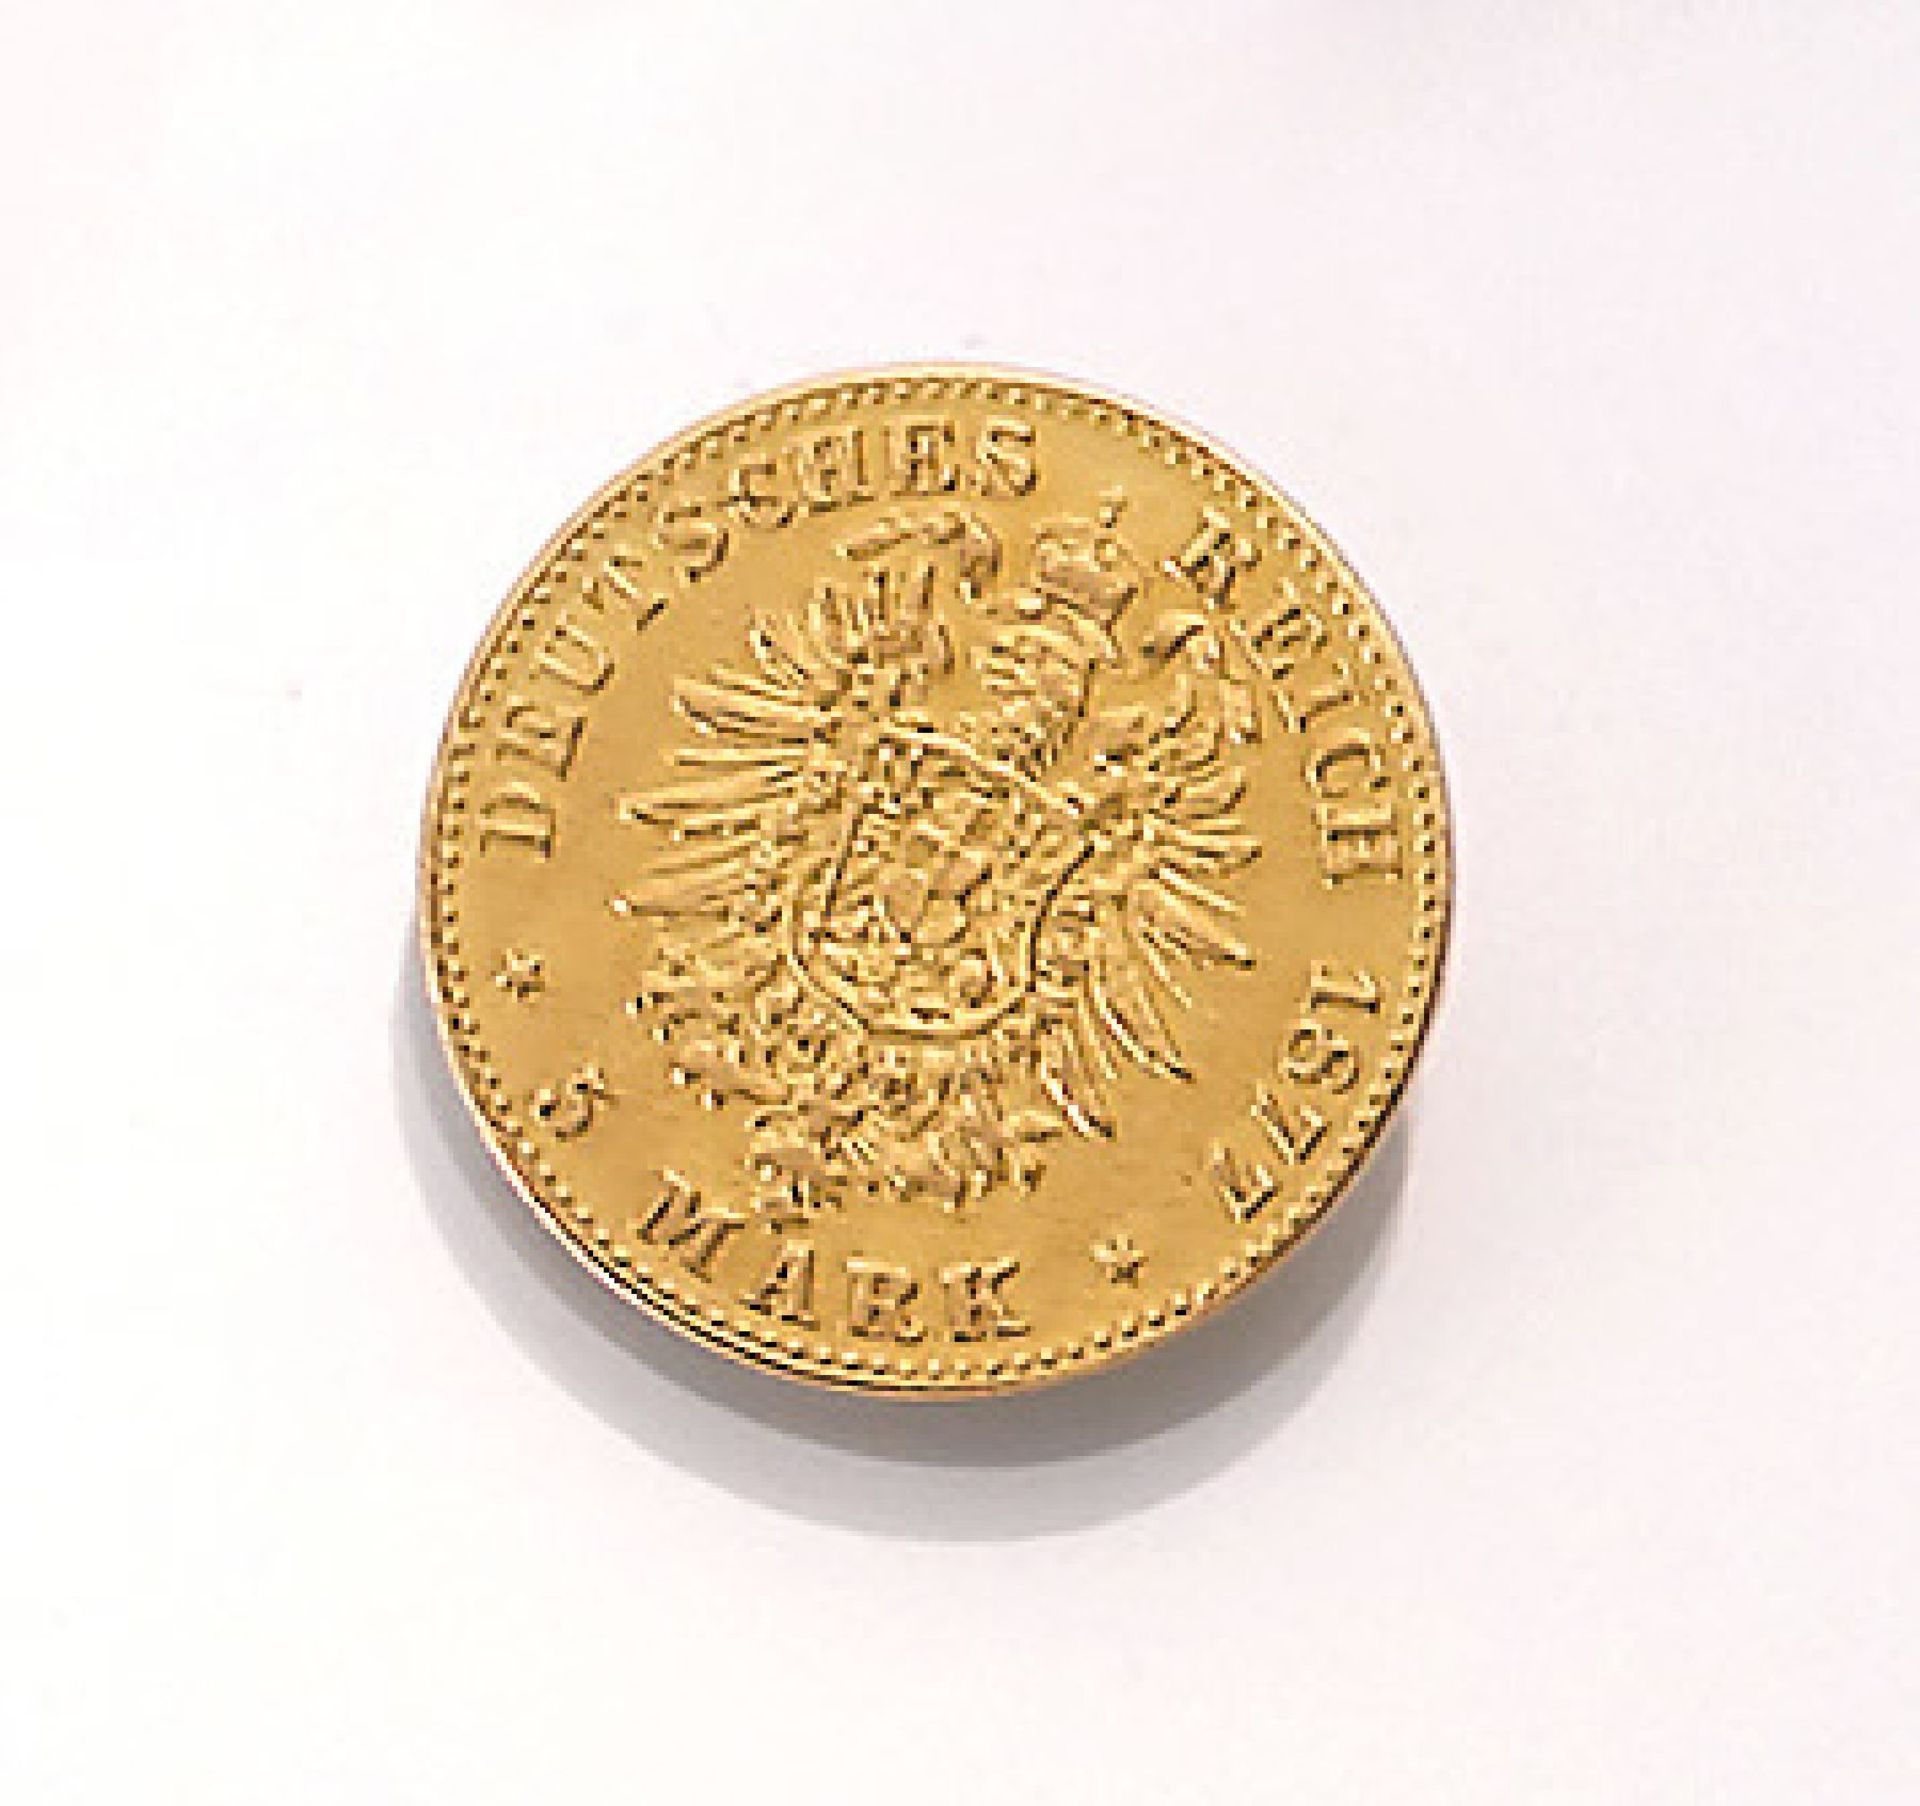 Goldmünze, 5 Mark, Deutsches Reich, 1877, Freie und Hansestadt Hamburg, Prägemarke JGold coin, 5